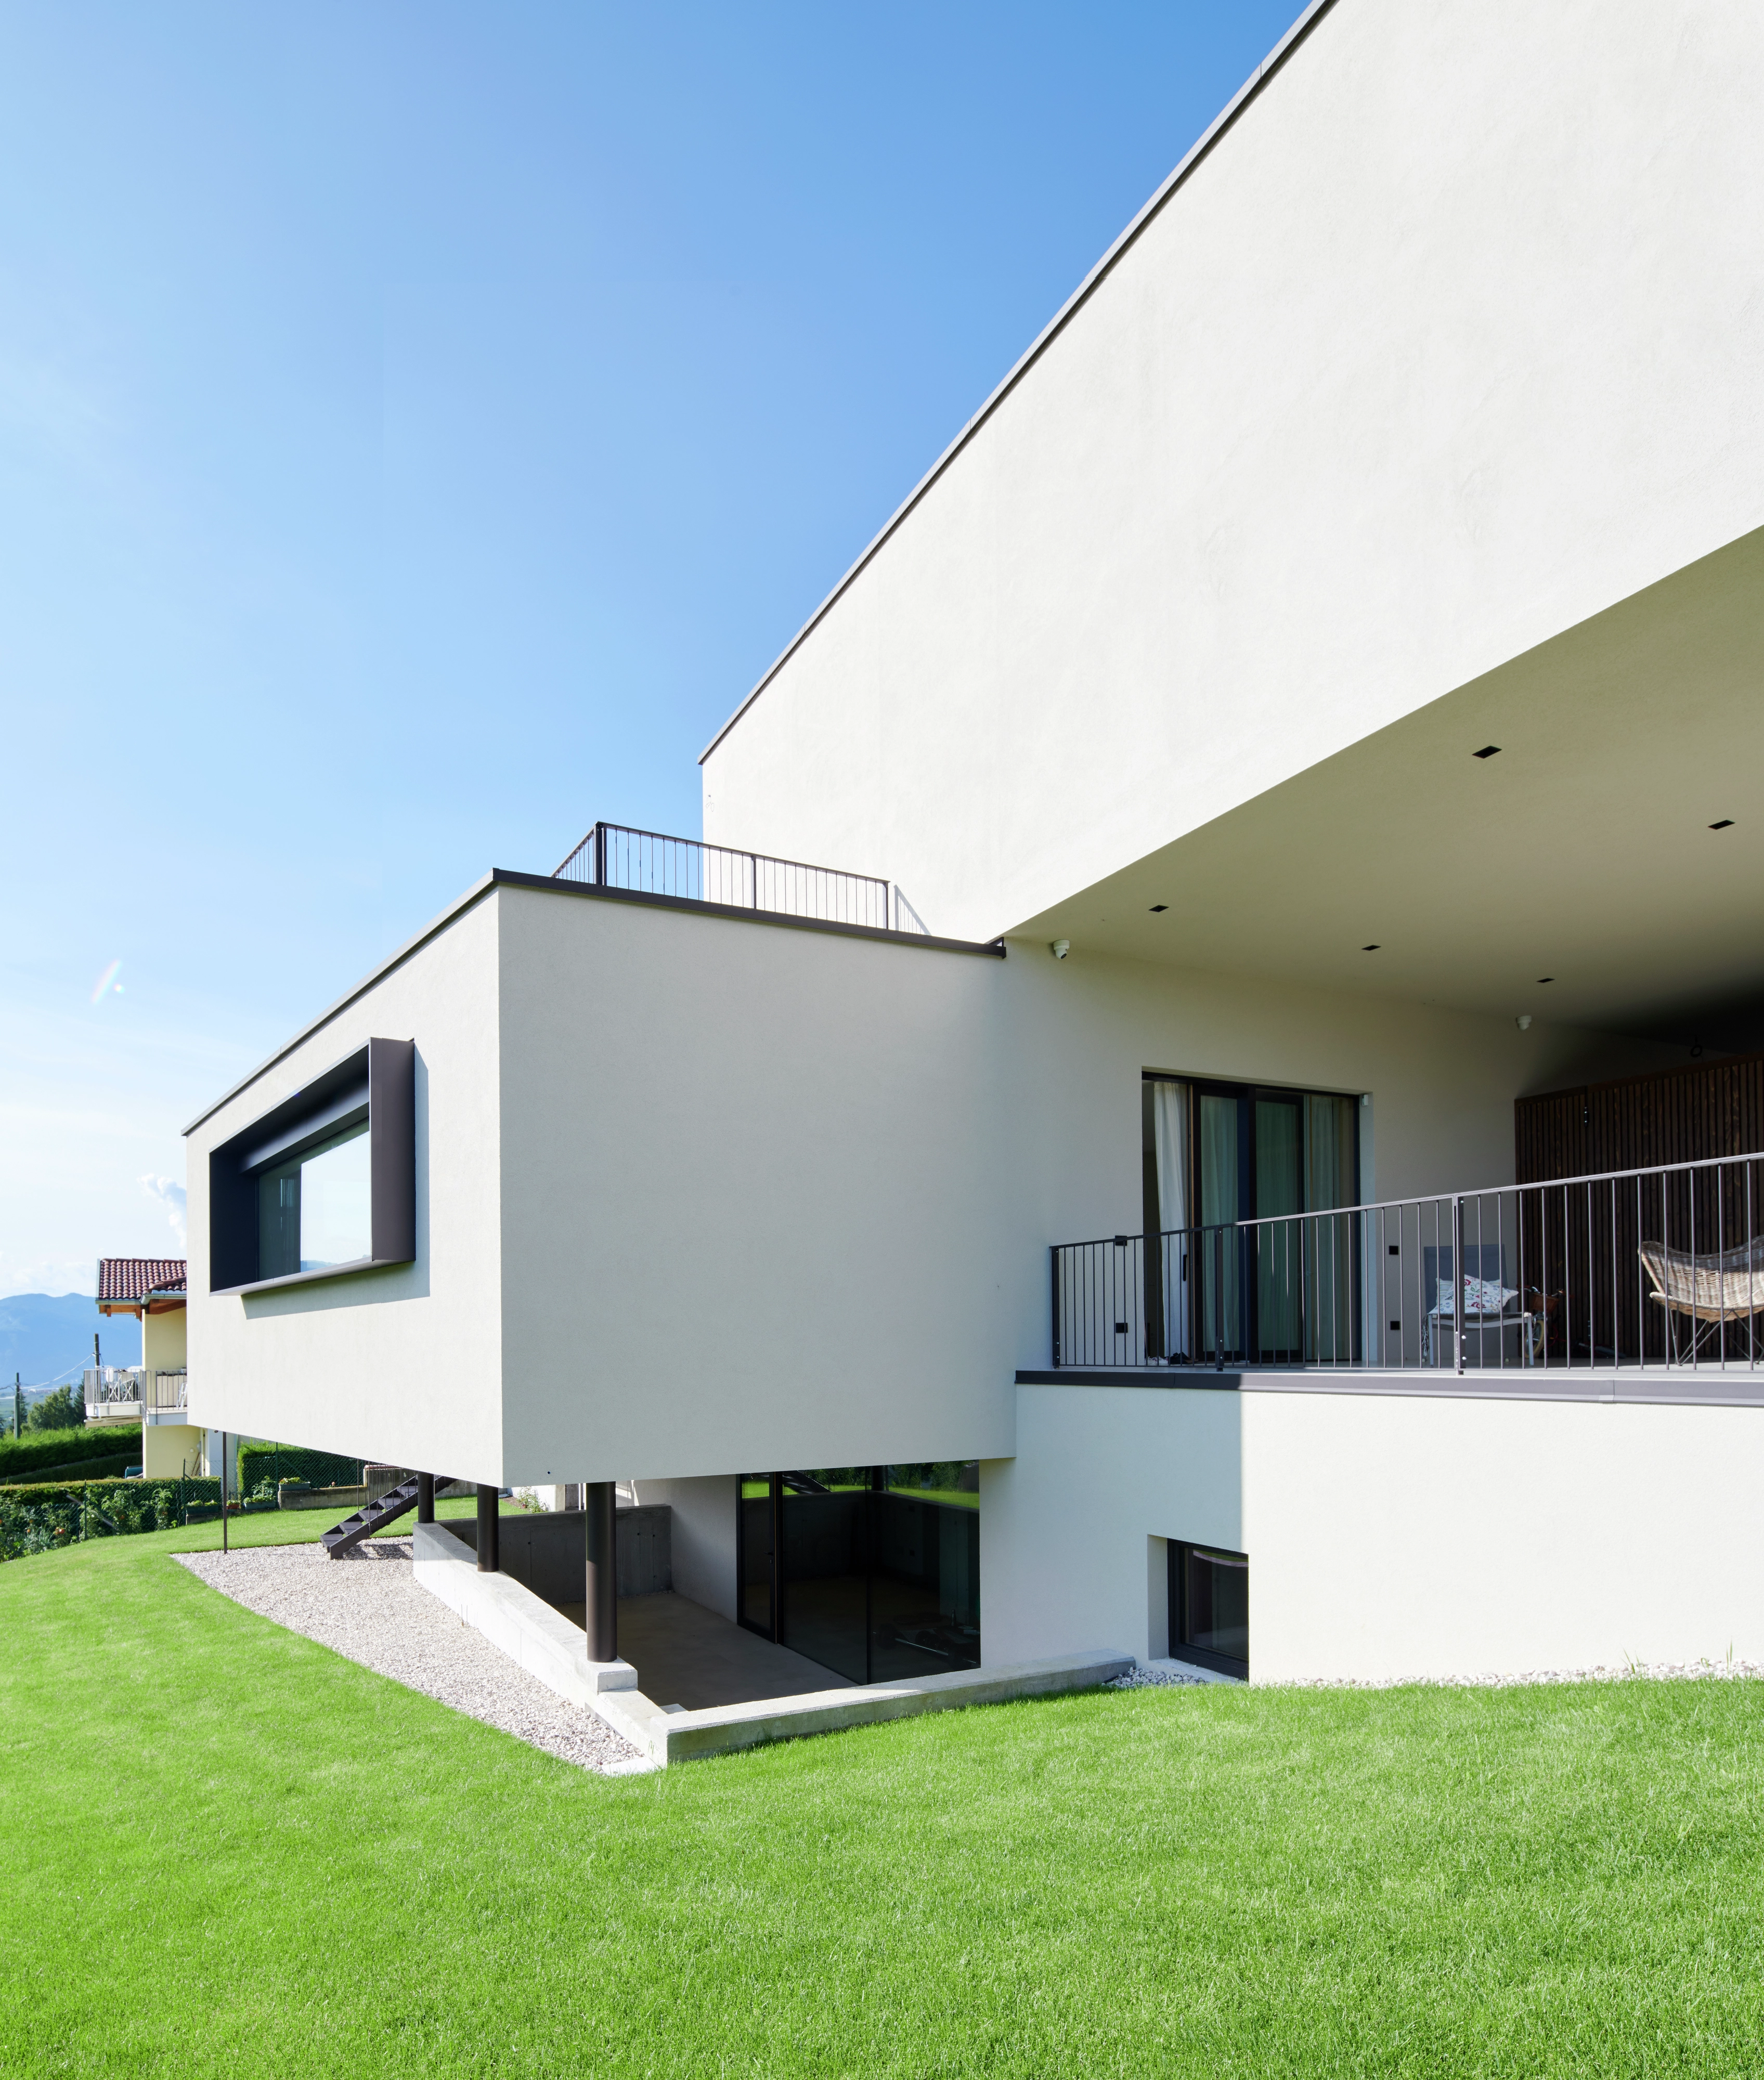 Maison individuelle moderne avec de grandes fenêtres et un toit plat face à un ciel bleu.